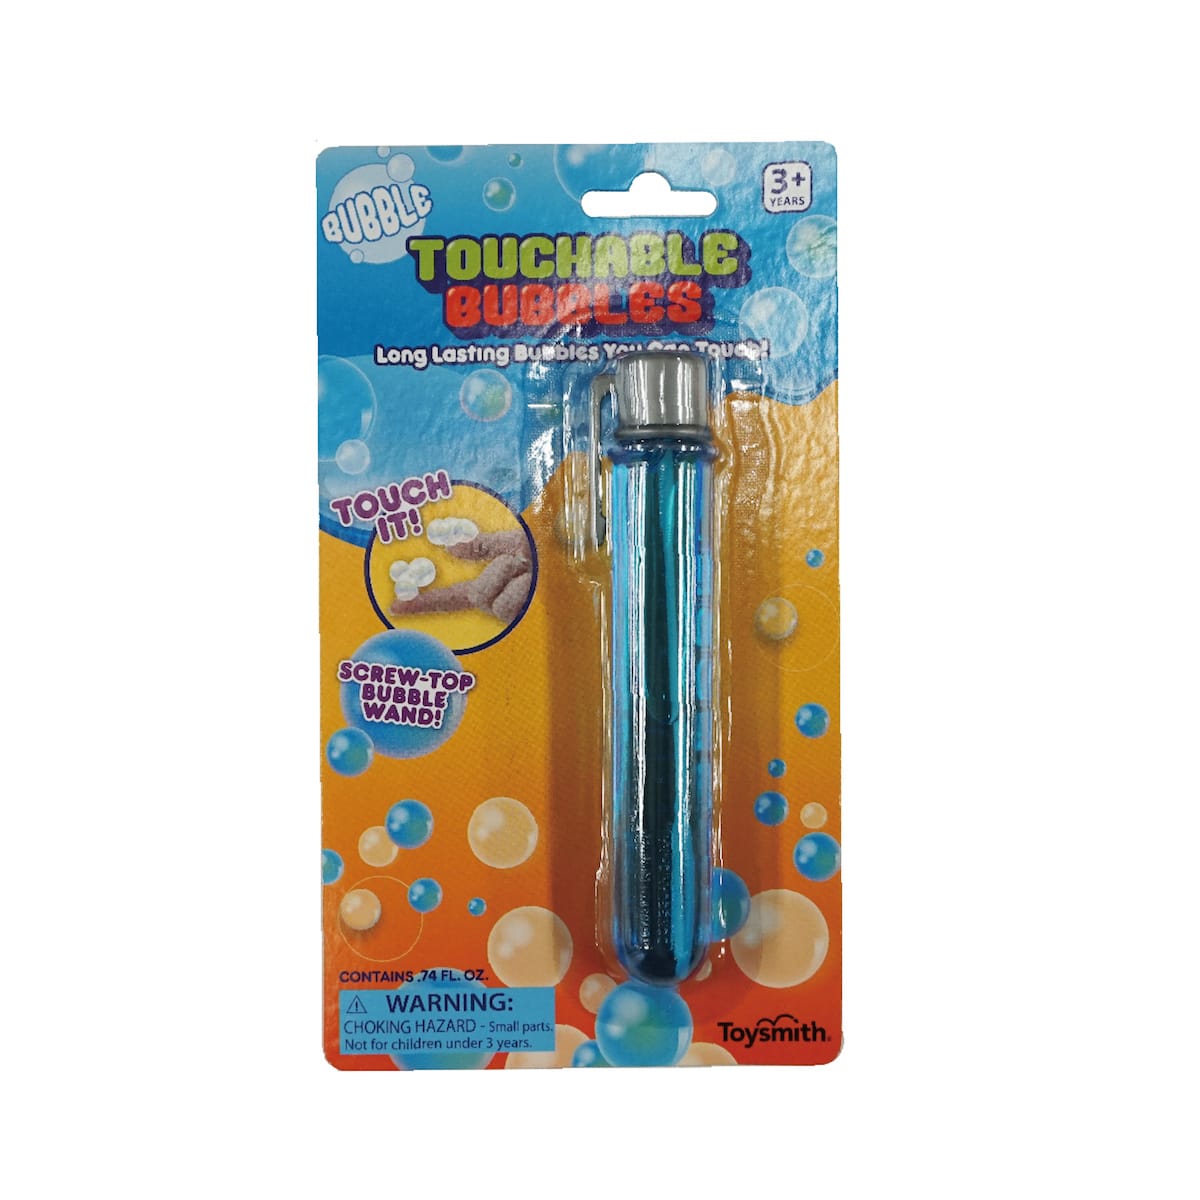 タッチ・バブル(ブルー・ピンク): ボーネルンド オンラインショップ。世界中の知育玩具など、あそび道具がたくさん。0歳からのお子様へのプレゼントにも。